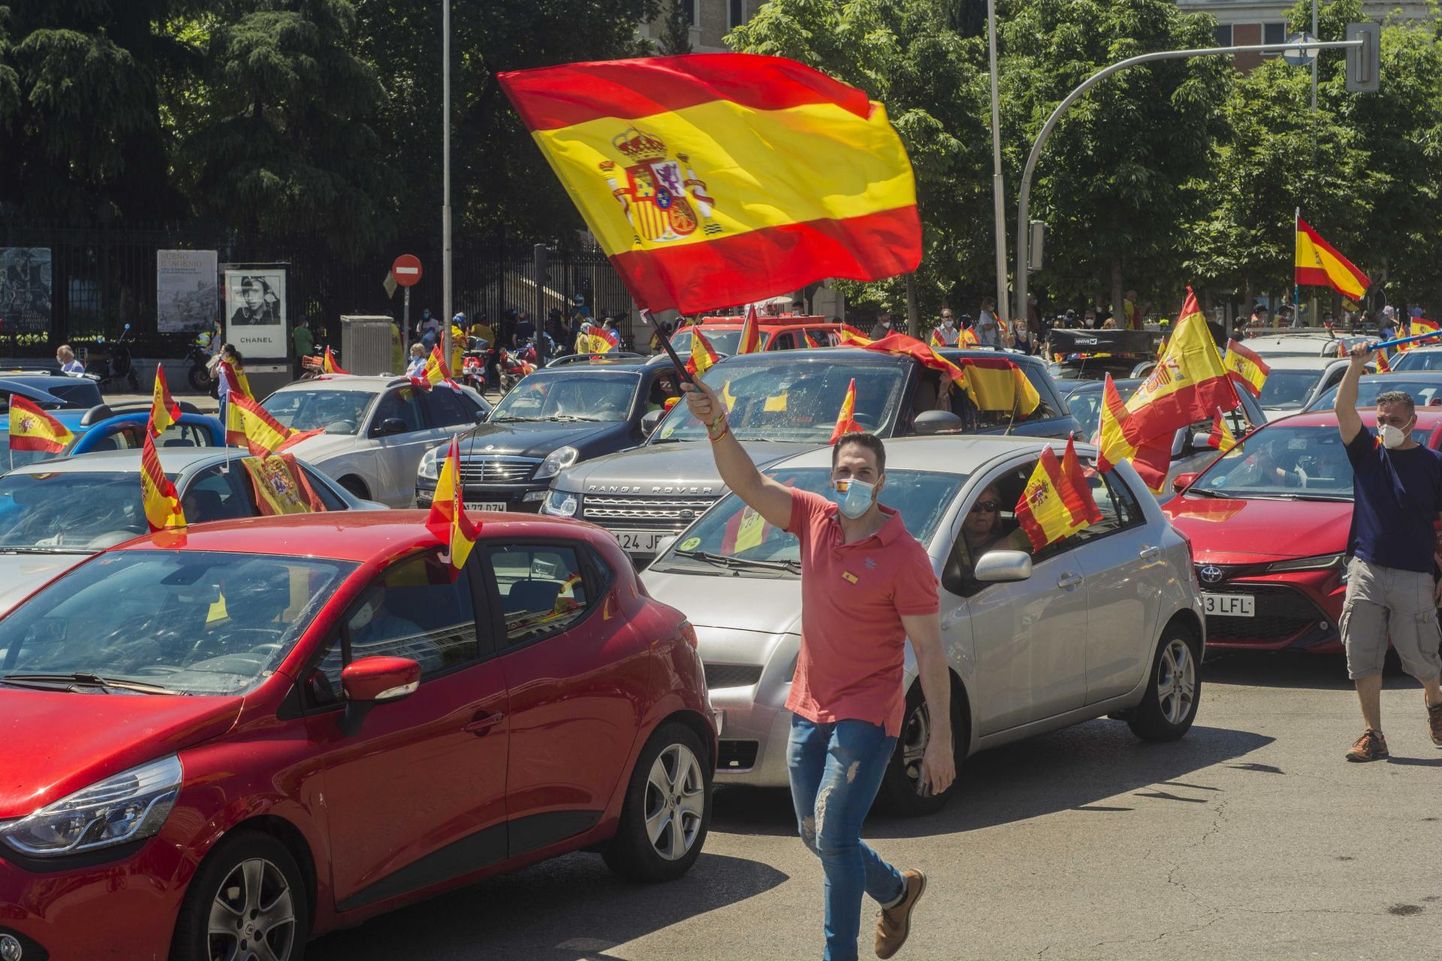 Paremäärmuslik Vox korraldas nädalavahetusel Madridi kesklinnas protestiaktsiooni, millega nõuti peaminister Pedro Sáncheze tagasiastumist.